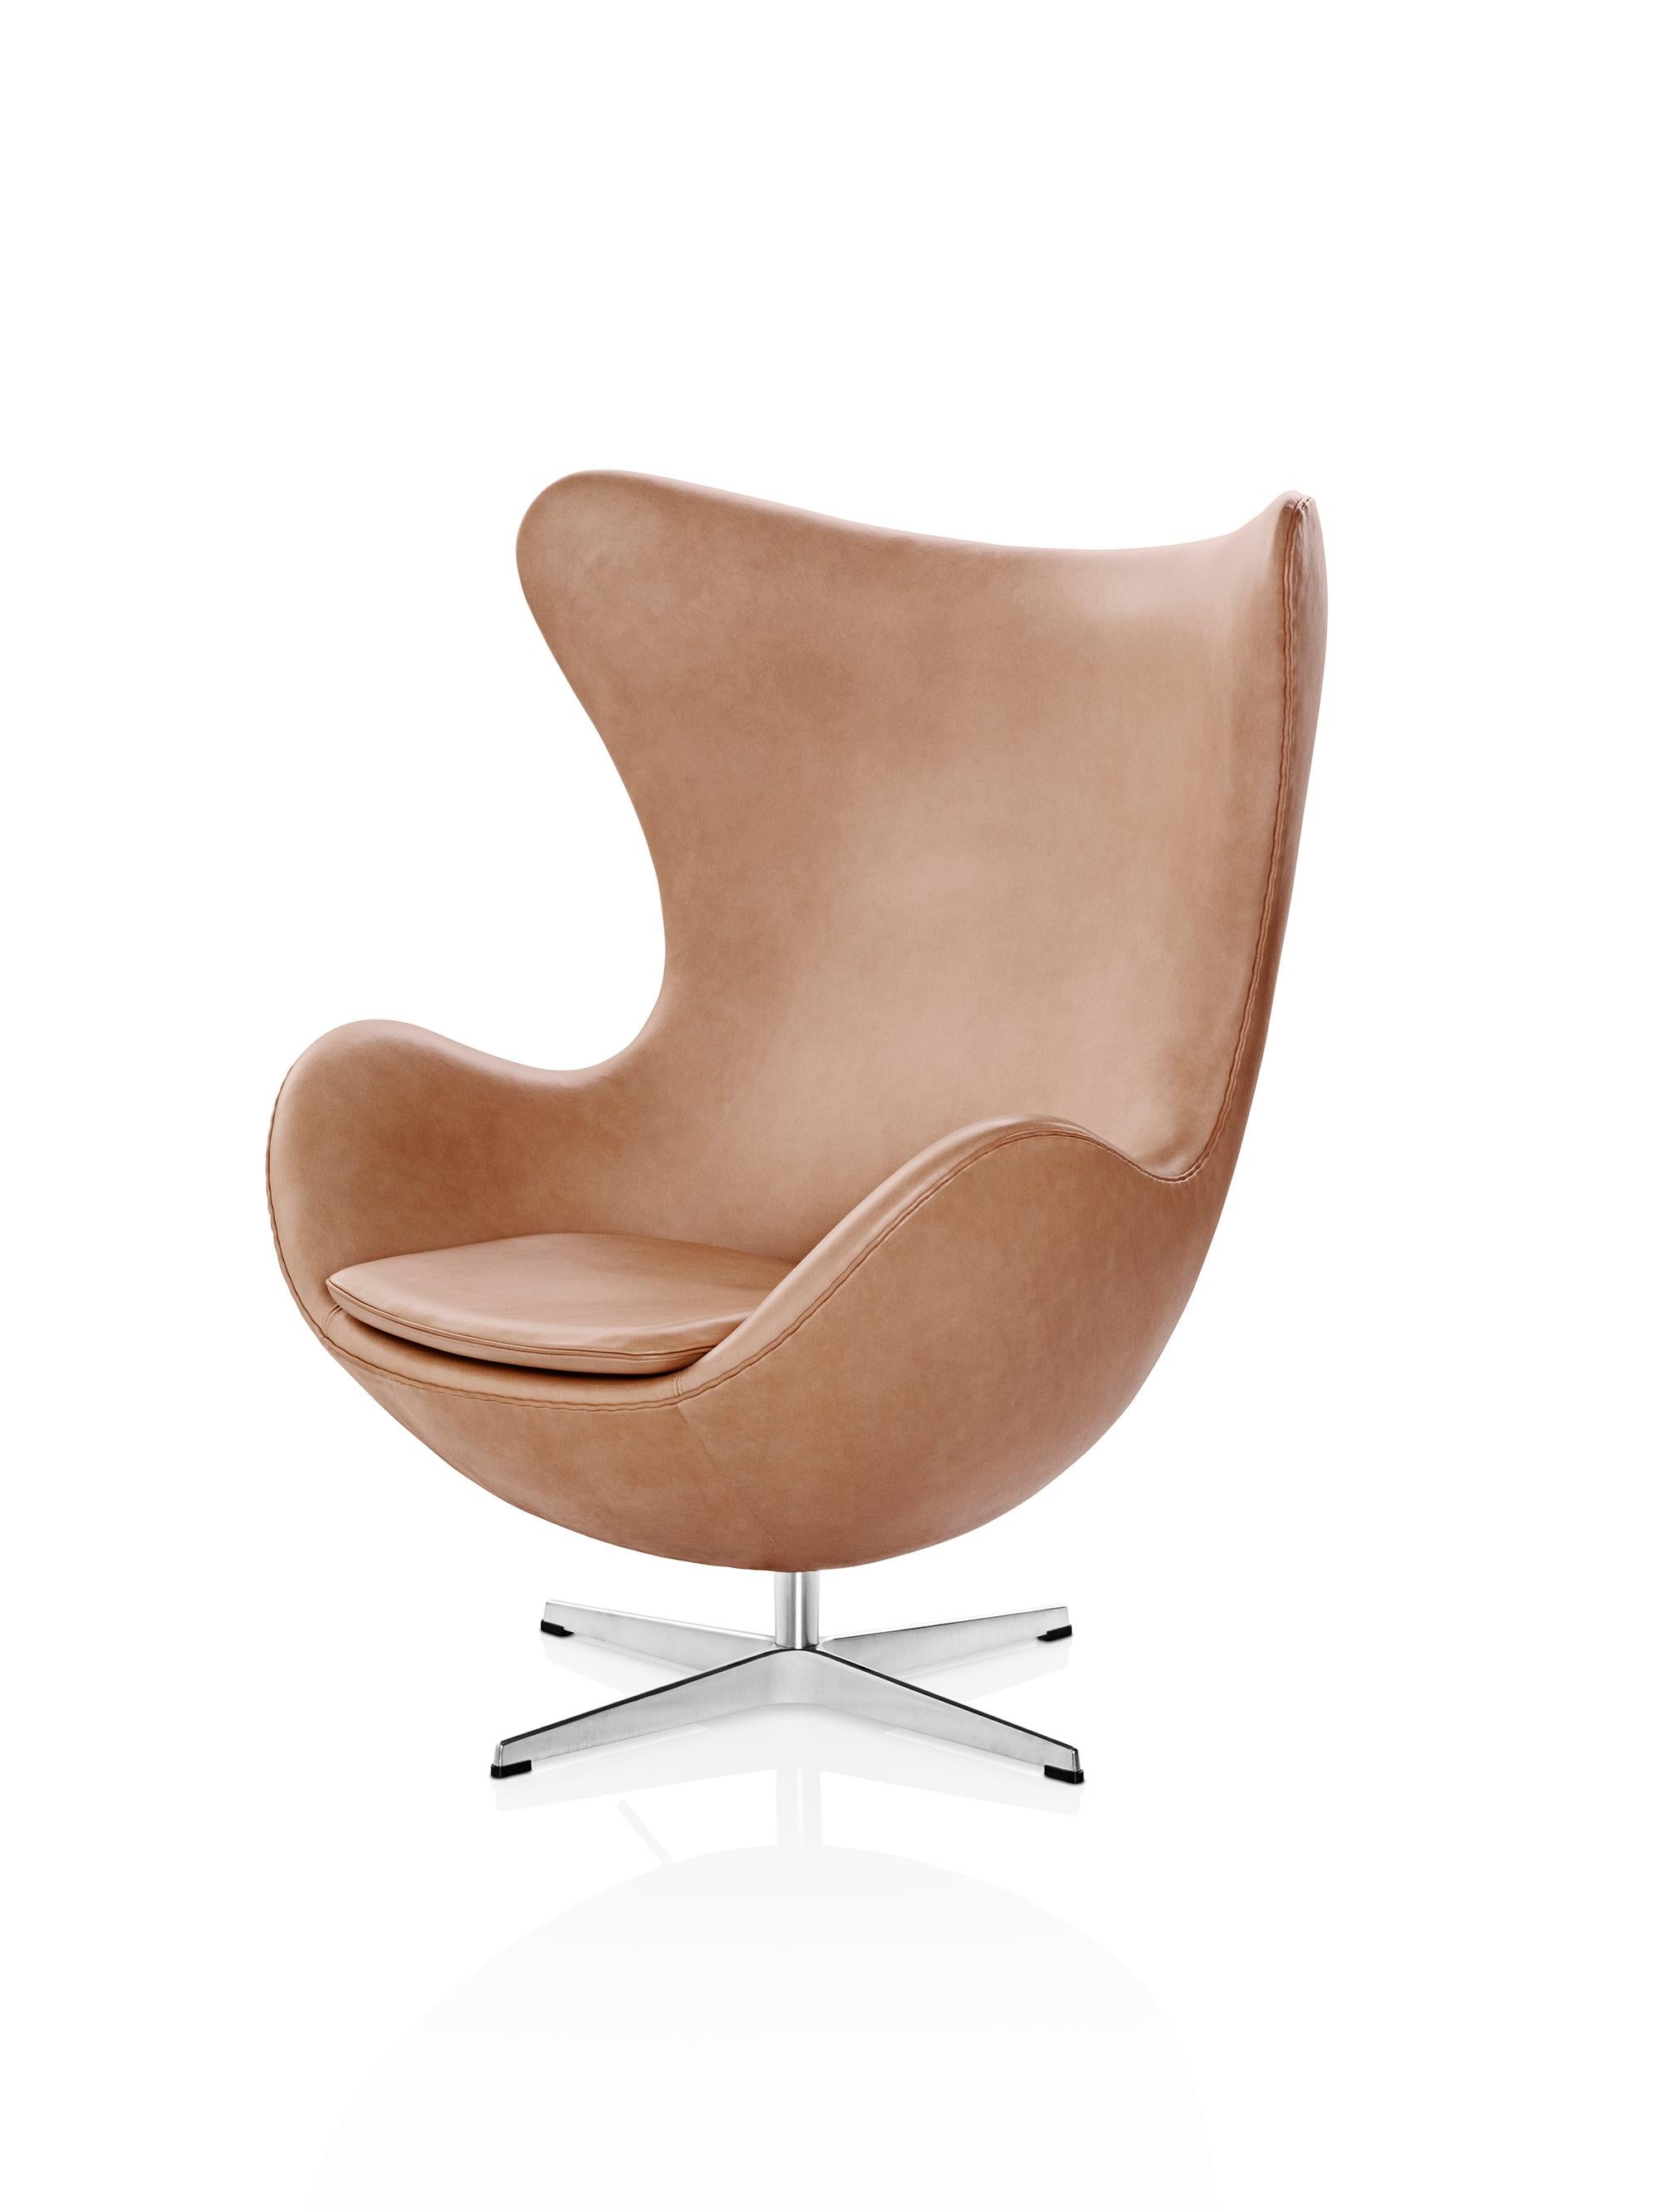 Arne Jacobsen 'Egg' Chair for Fritz Hansen in Leather Upholstery (Cat. 5) For Sale 2